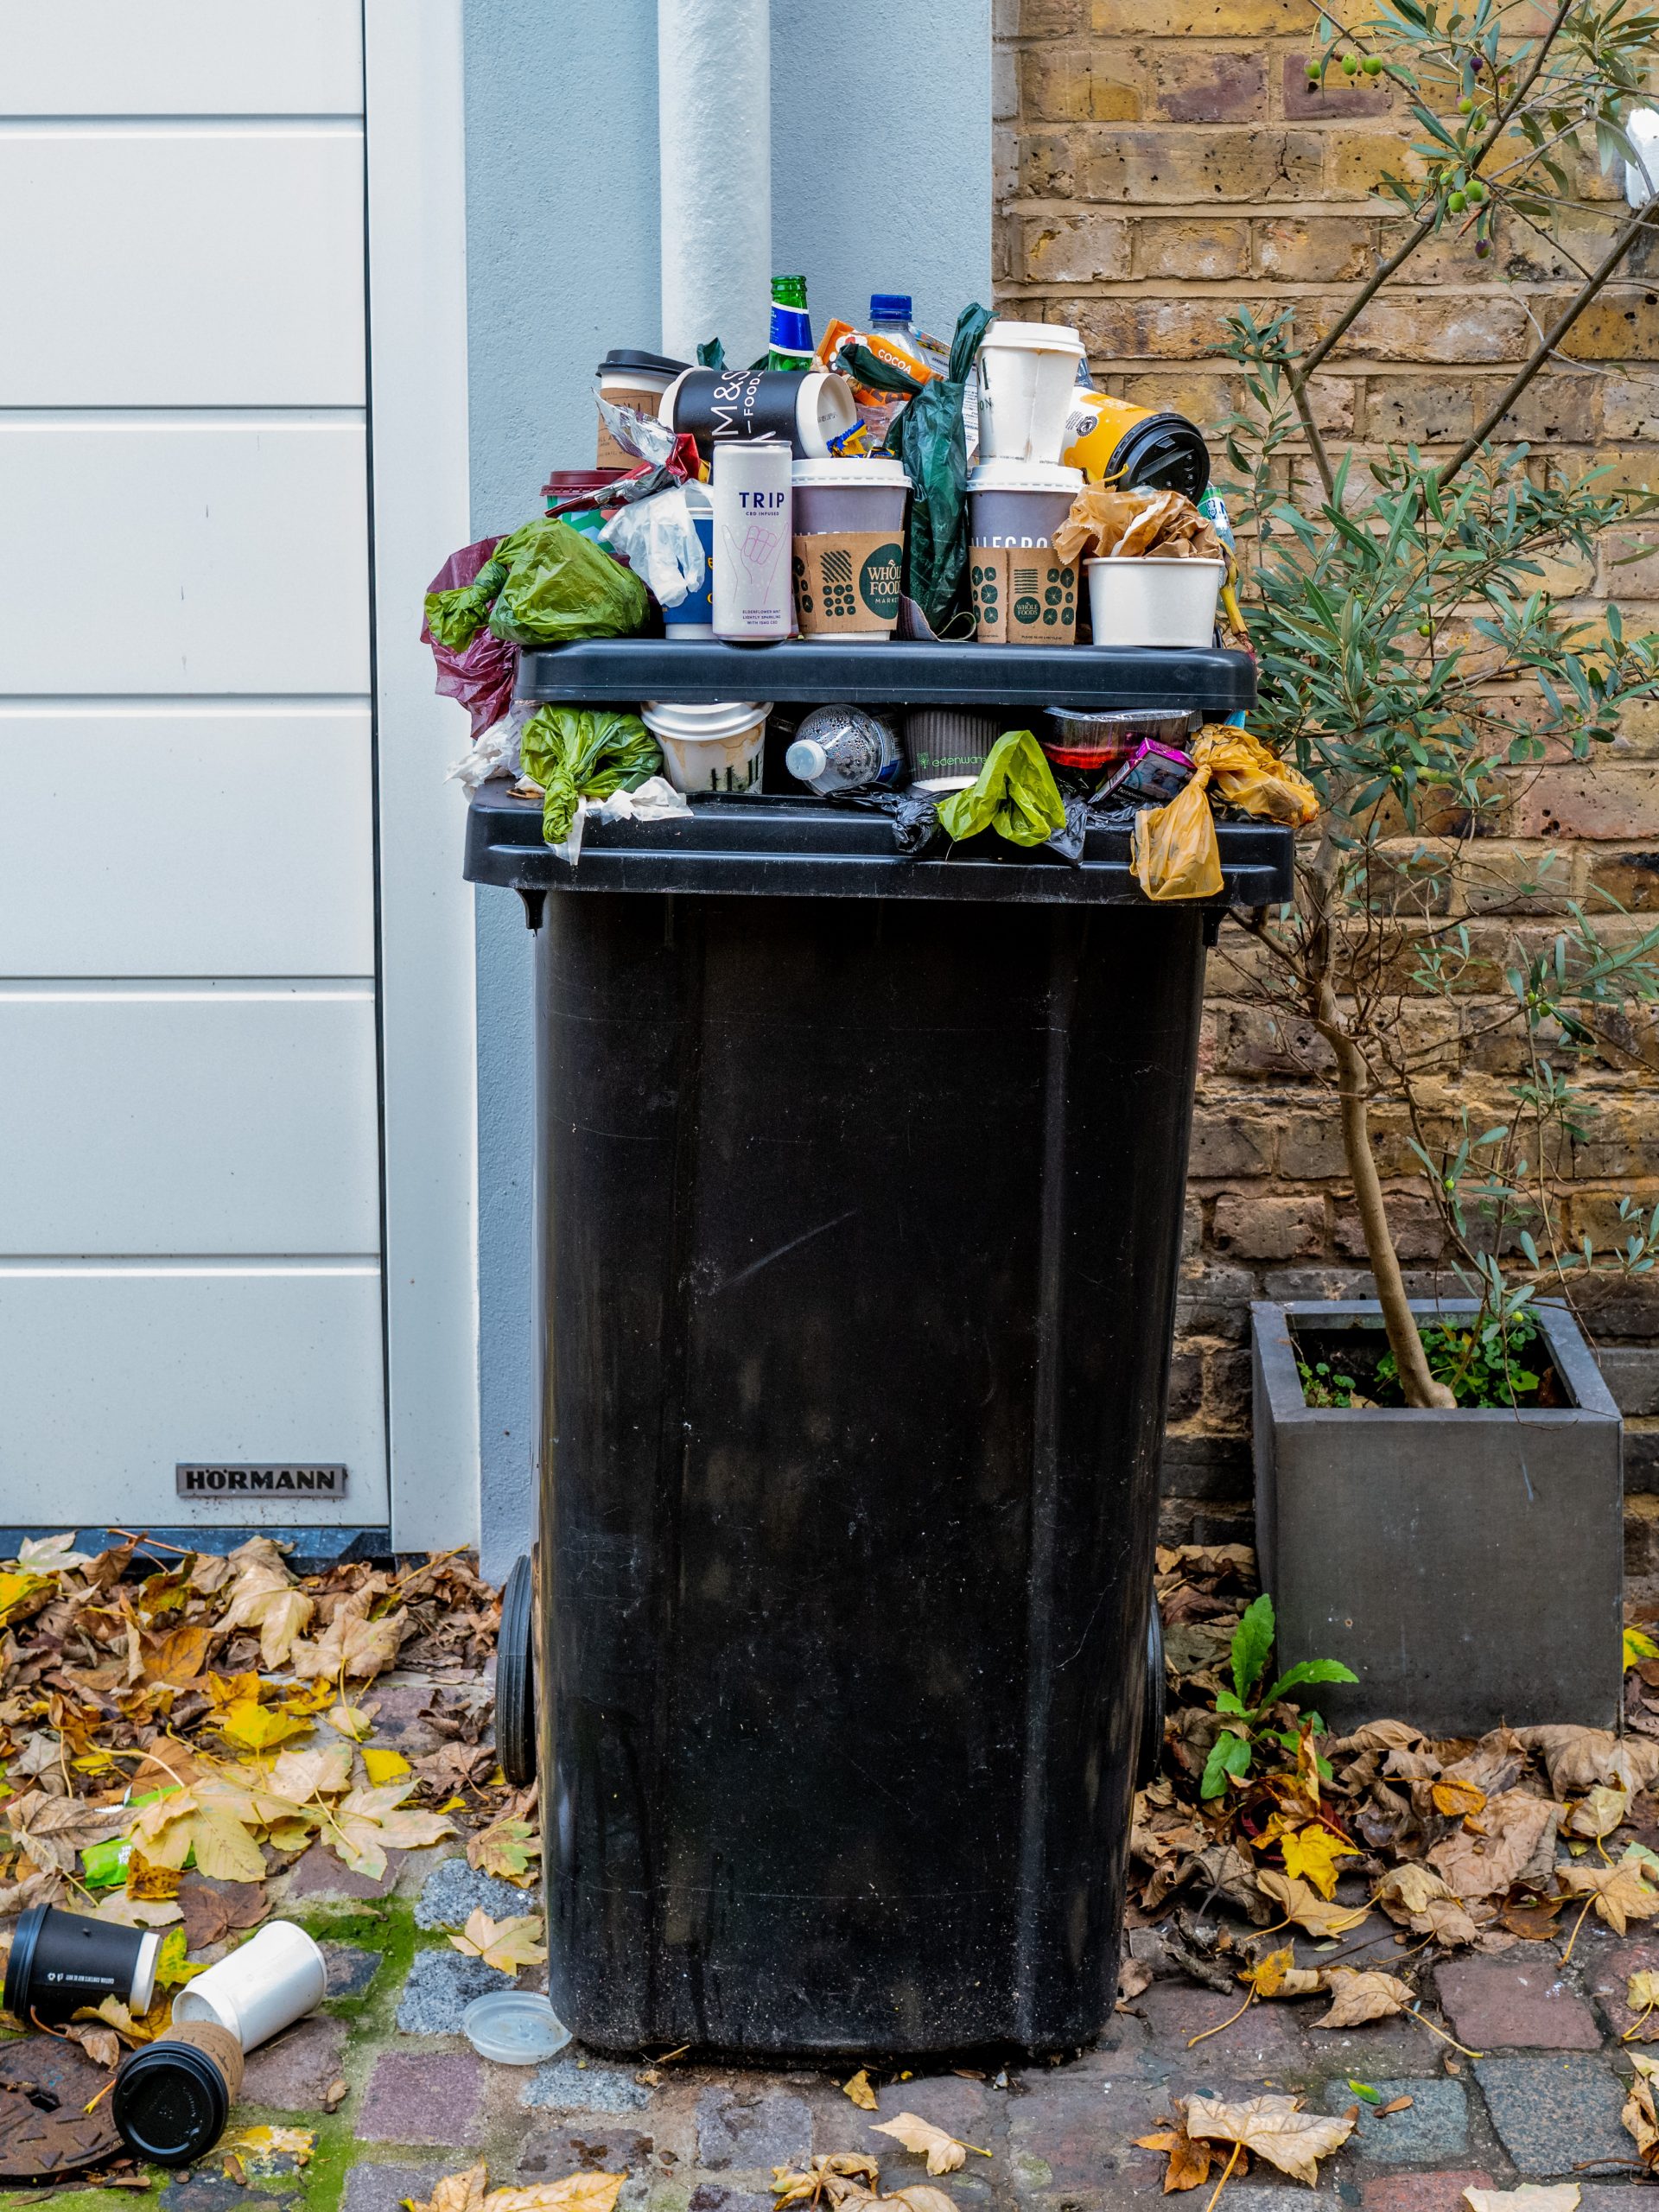  Come ridurre i rifiuti domestici: ecco le idee da mettere in pratica subito